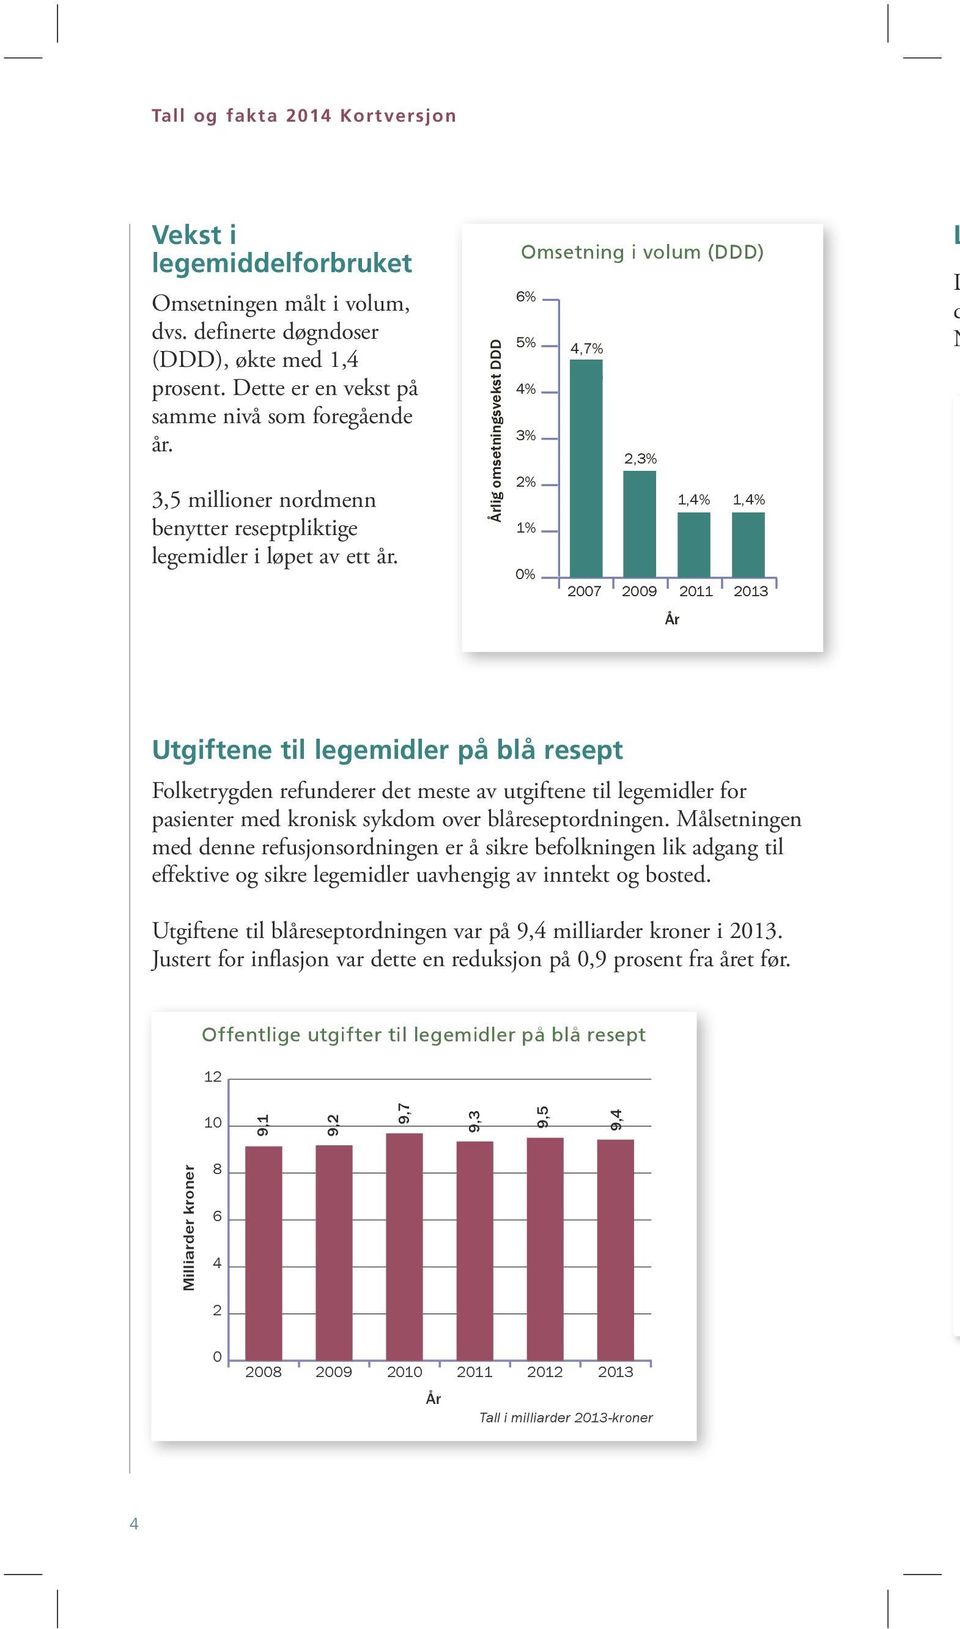 Årlig omsetningsvekst DDD Omsetning i volum (DDD) 6% 5% 4,7% 4,1% 4% 3% 2,3% 2% 1,4% 1,4% 1% 0% 2007 2009 2011 2013 År d N Utgiftene til legemidler på blå resept Folketrygden refunderer det meste av